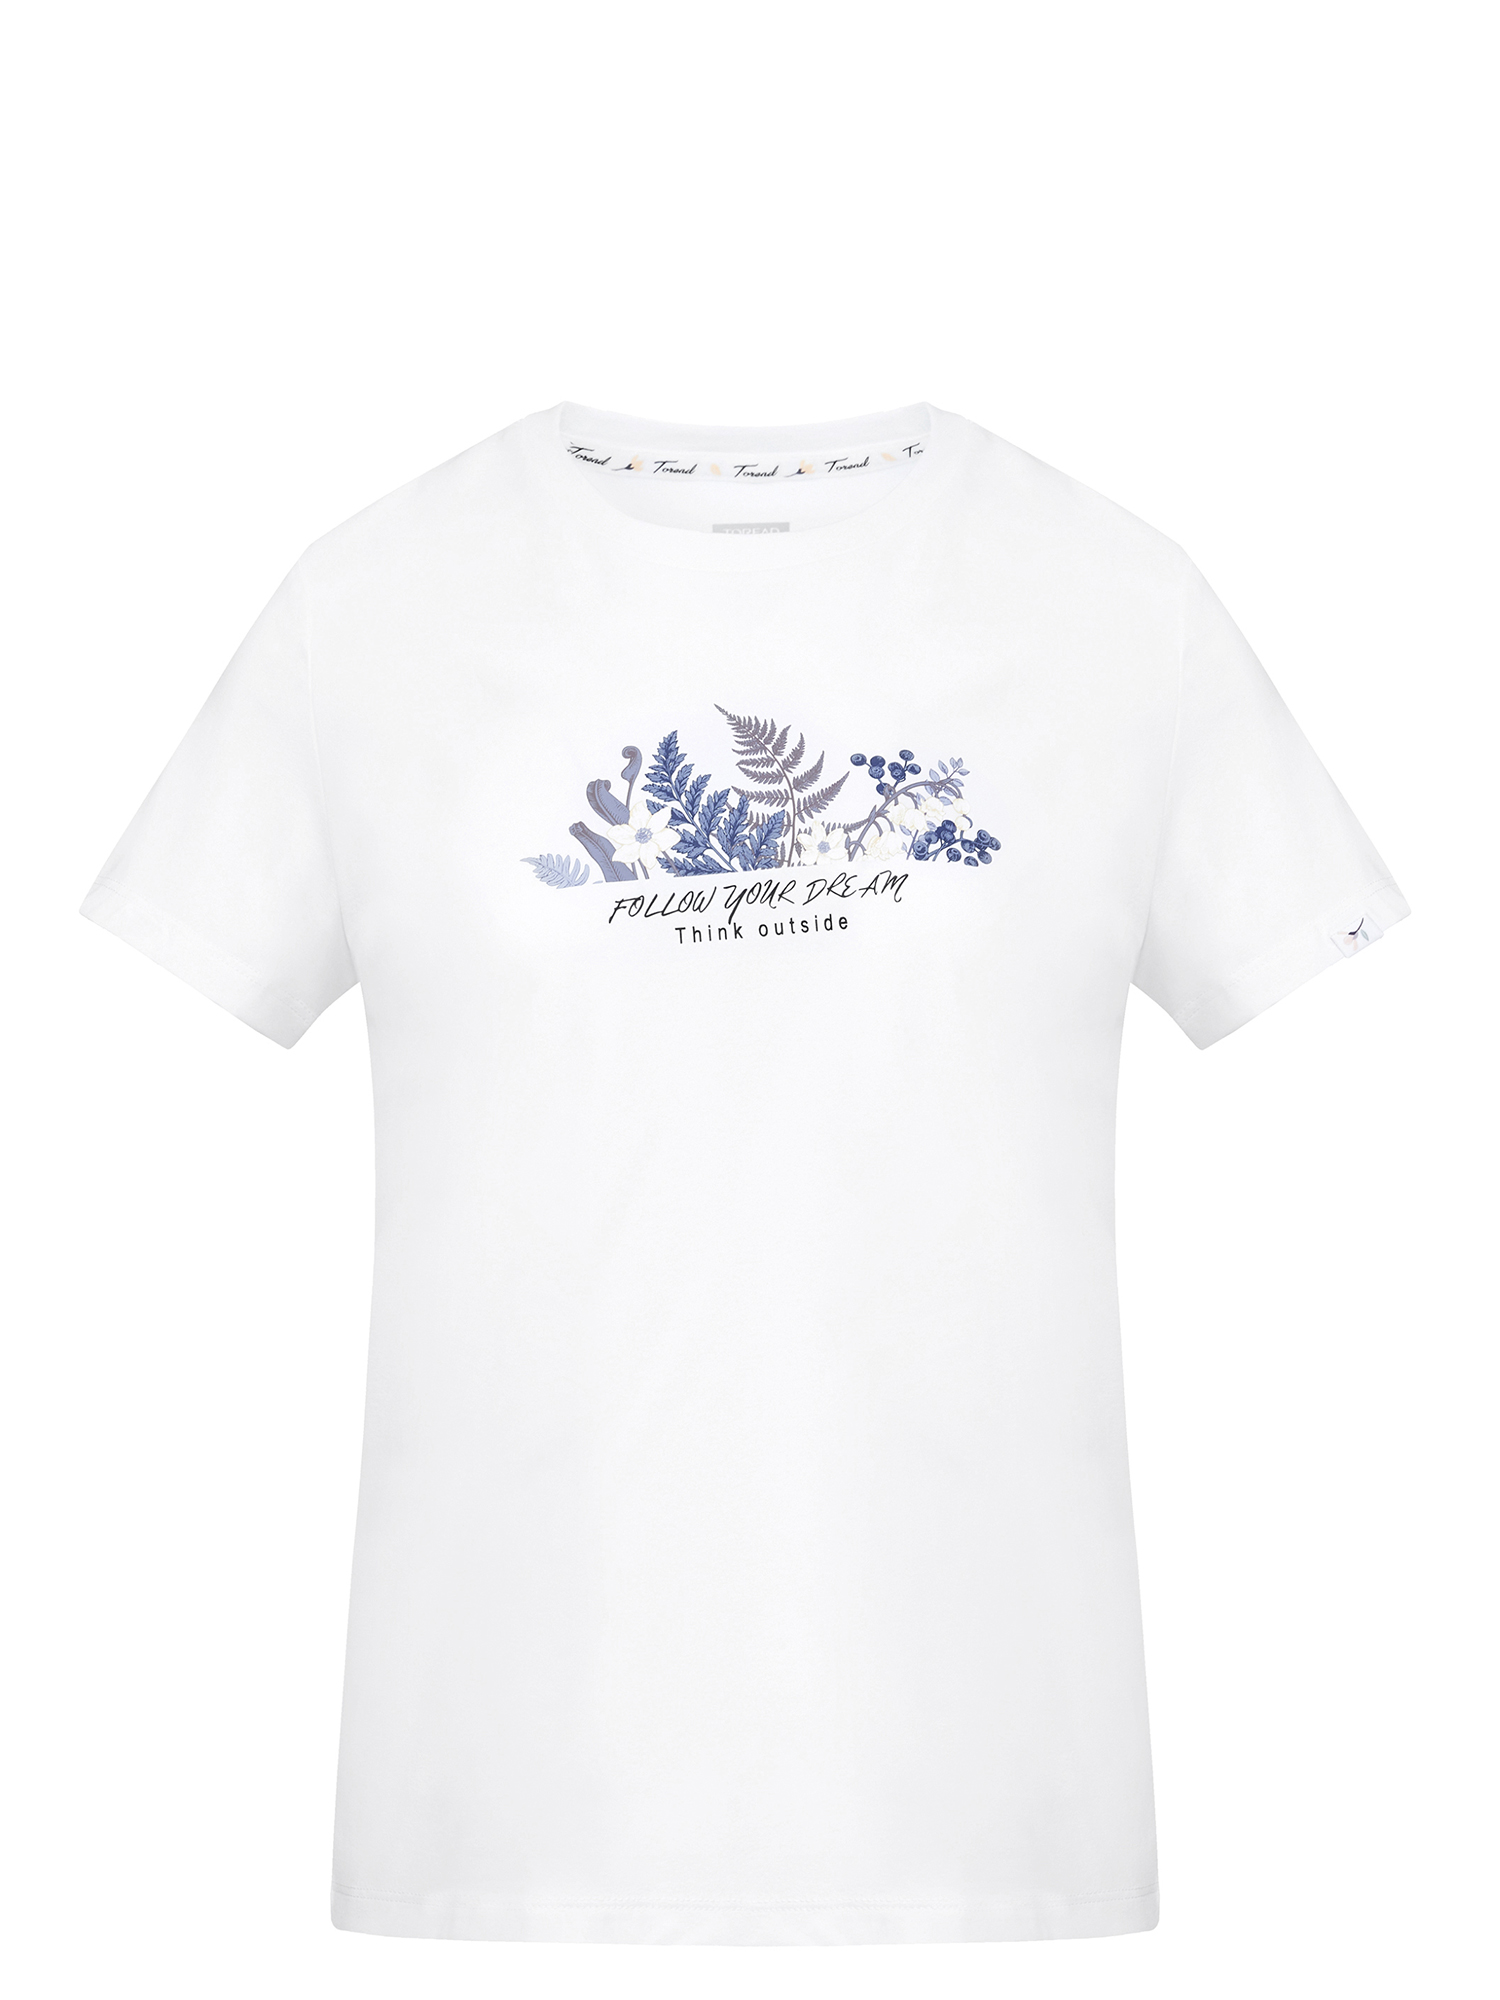 Футболка женская Toread Women's Short-Sleeve T-Shirt белая XL